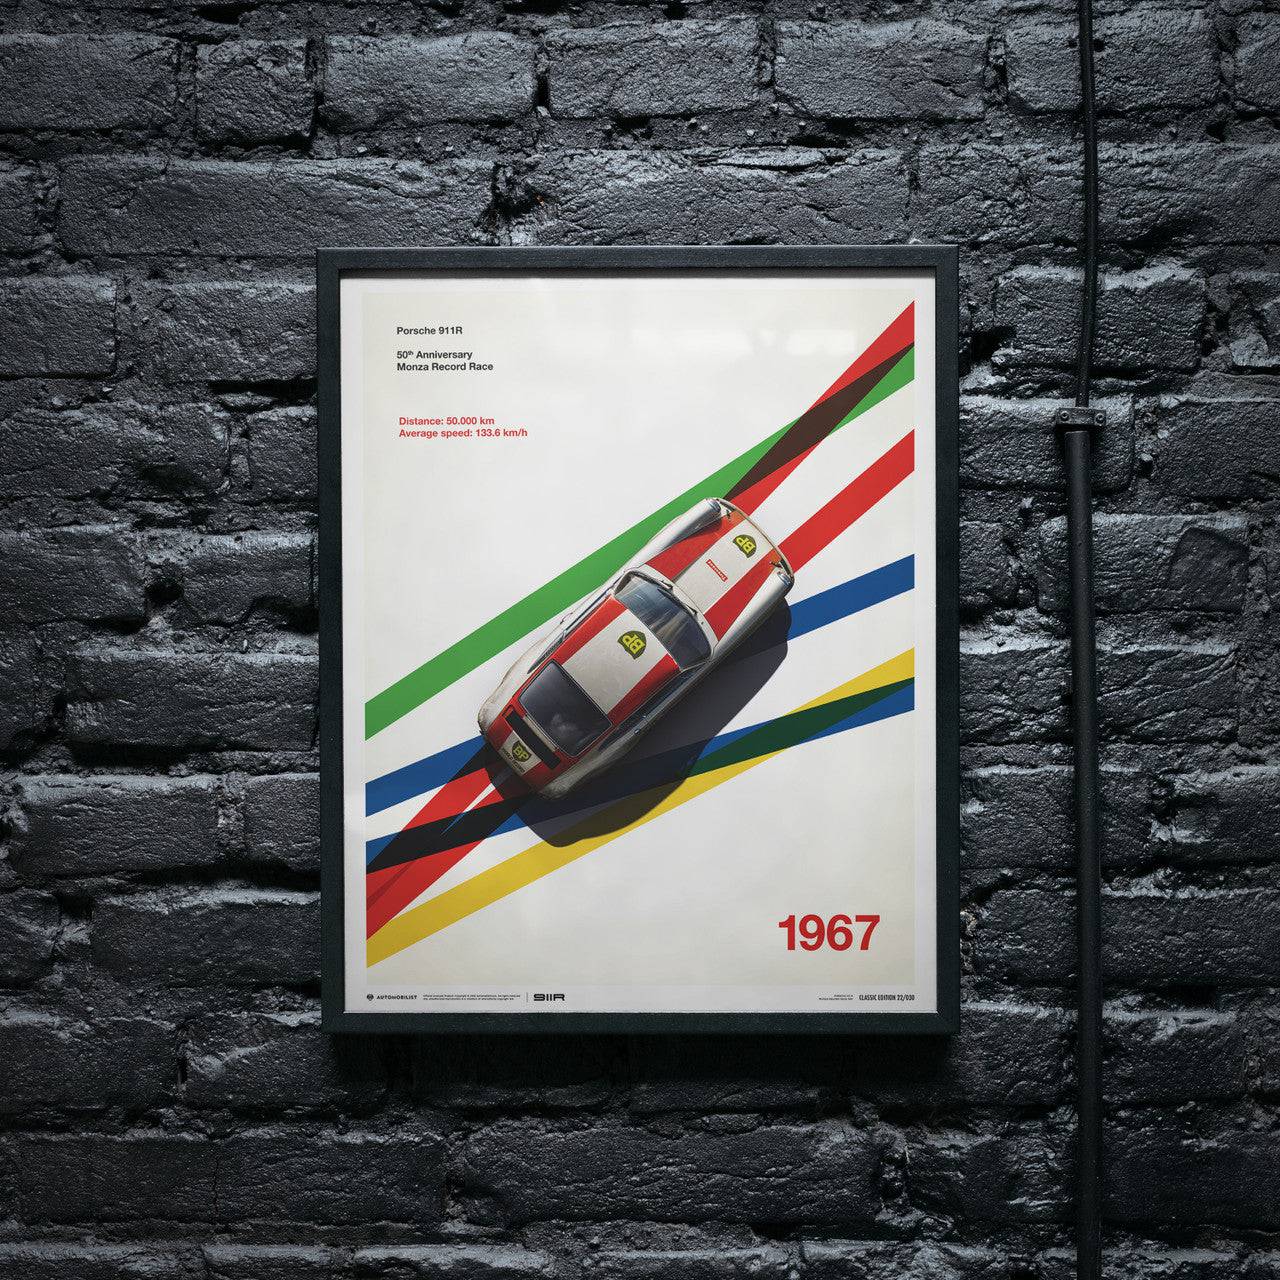 Porsche 911R BP Racing Monza 1967 Limited Poster | Automobilist